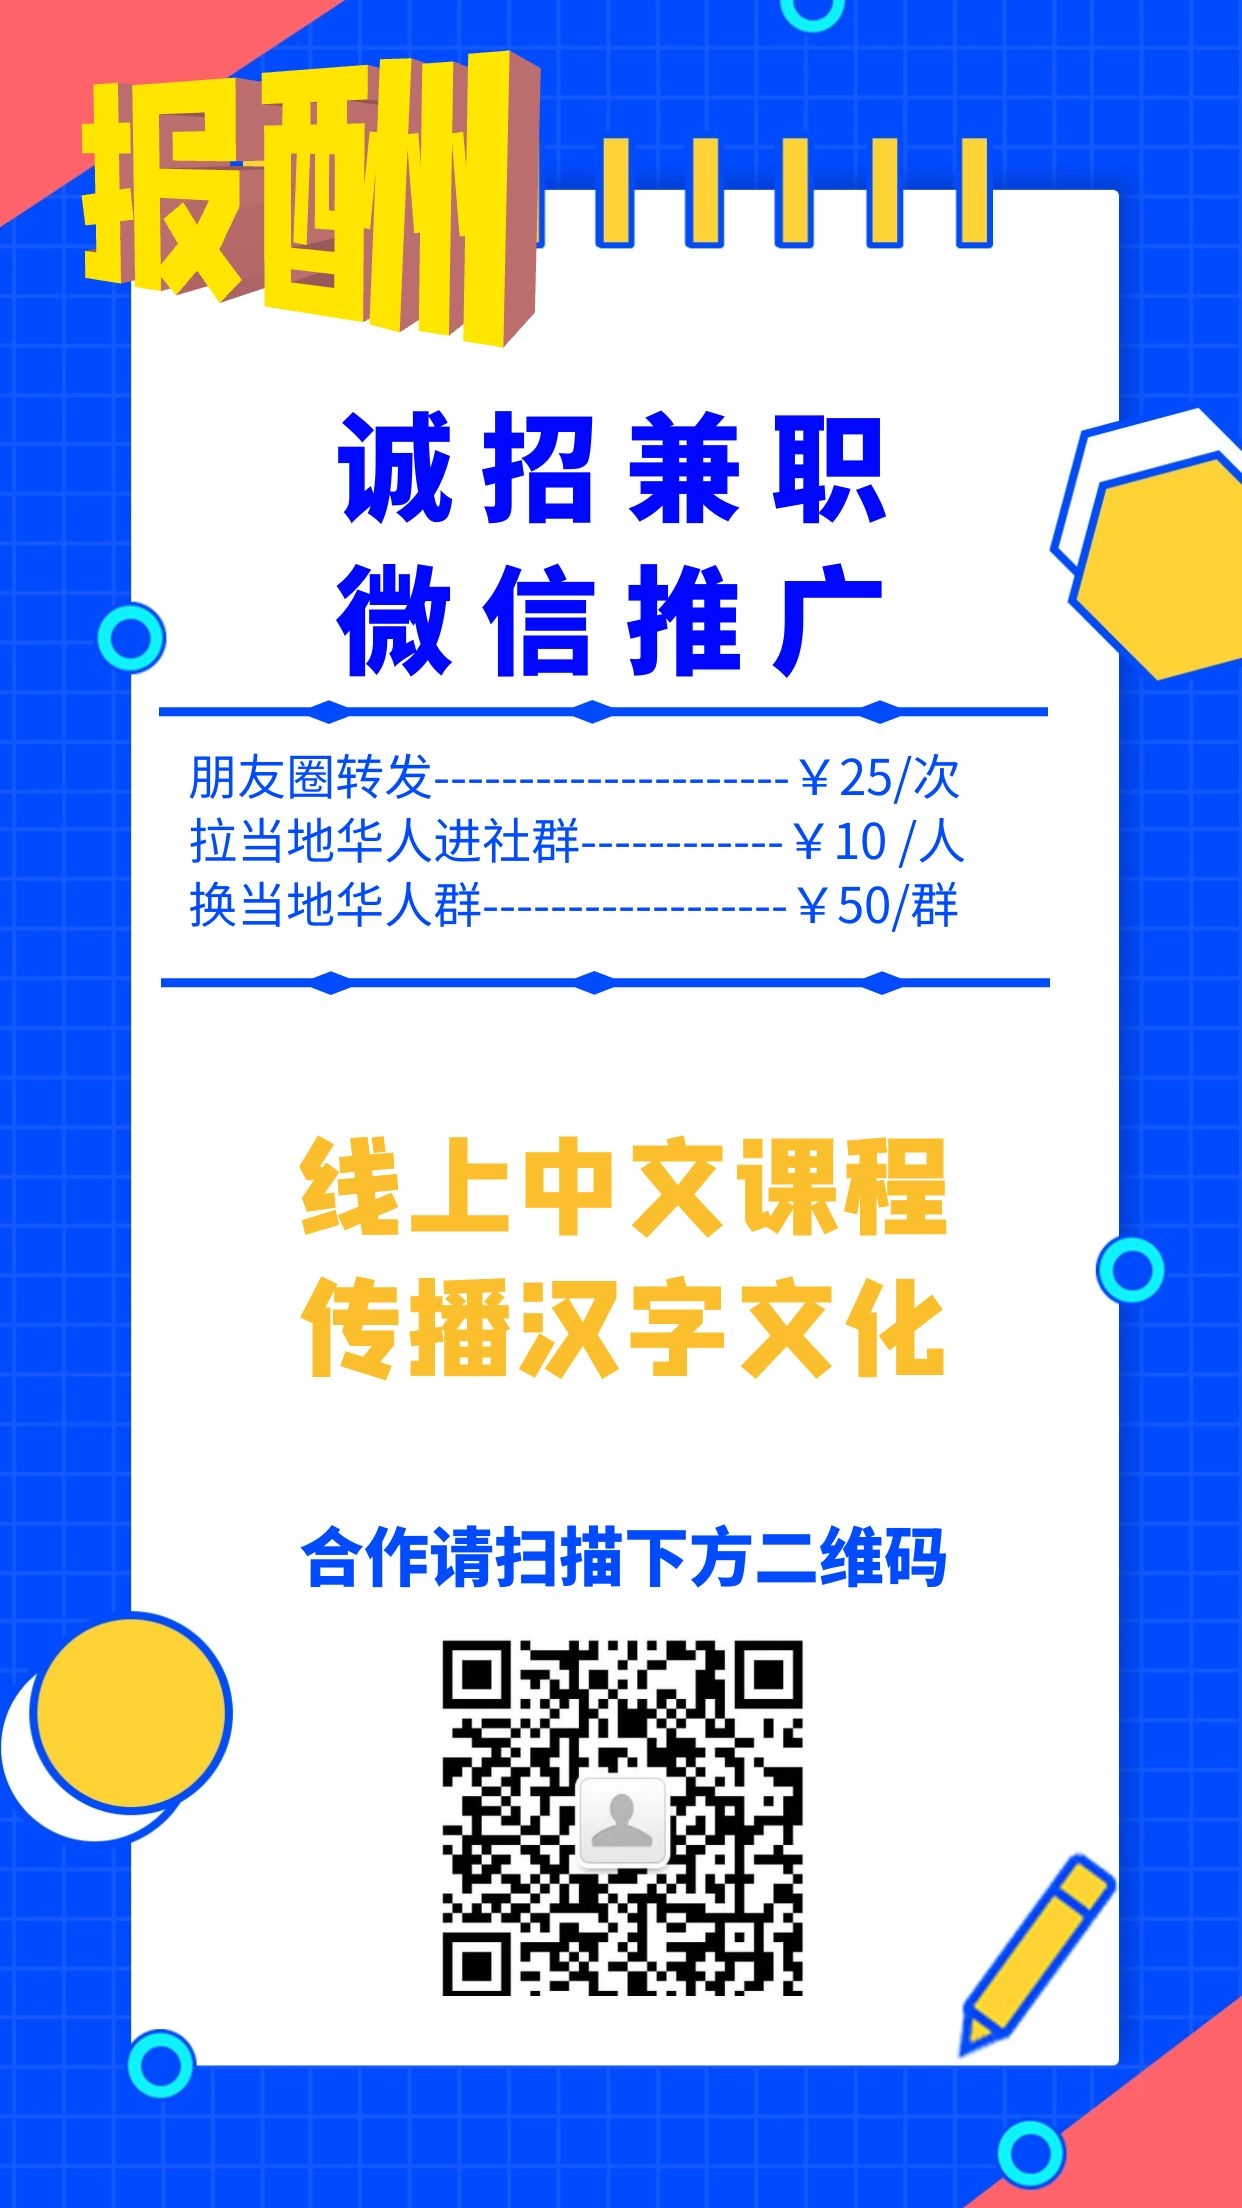 WeChat Image_20210510094340 (cliff).jpg